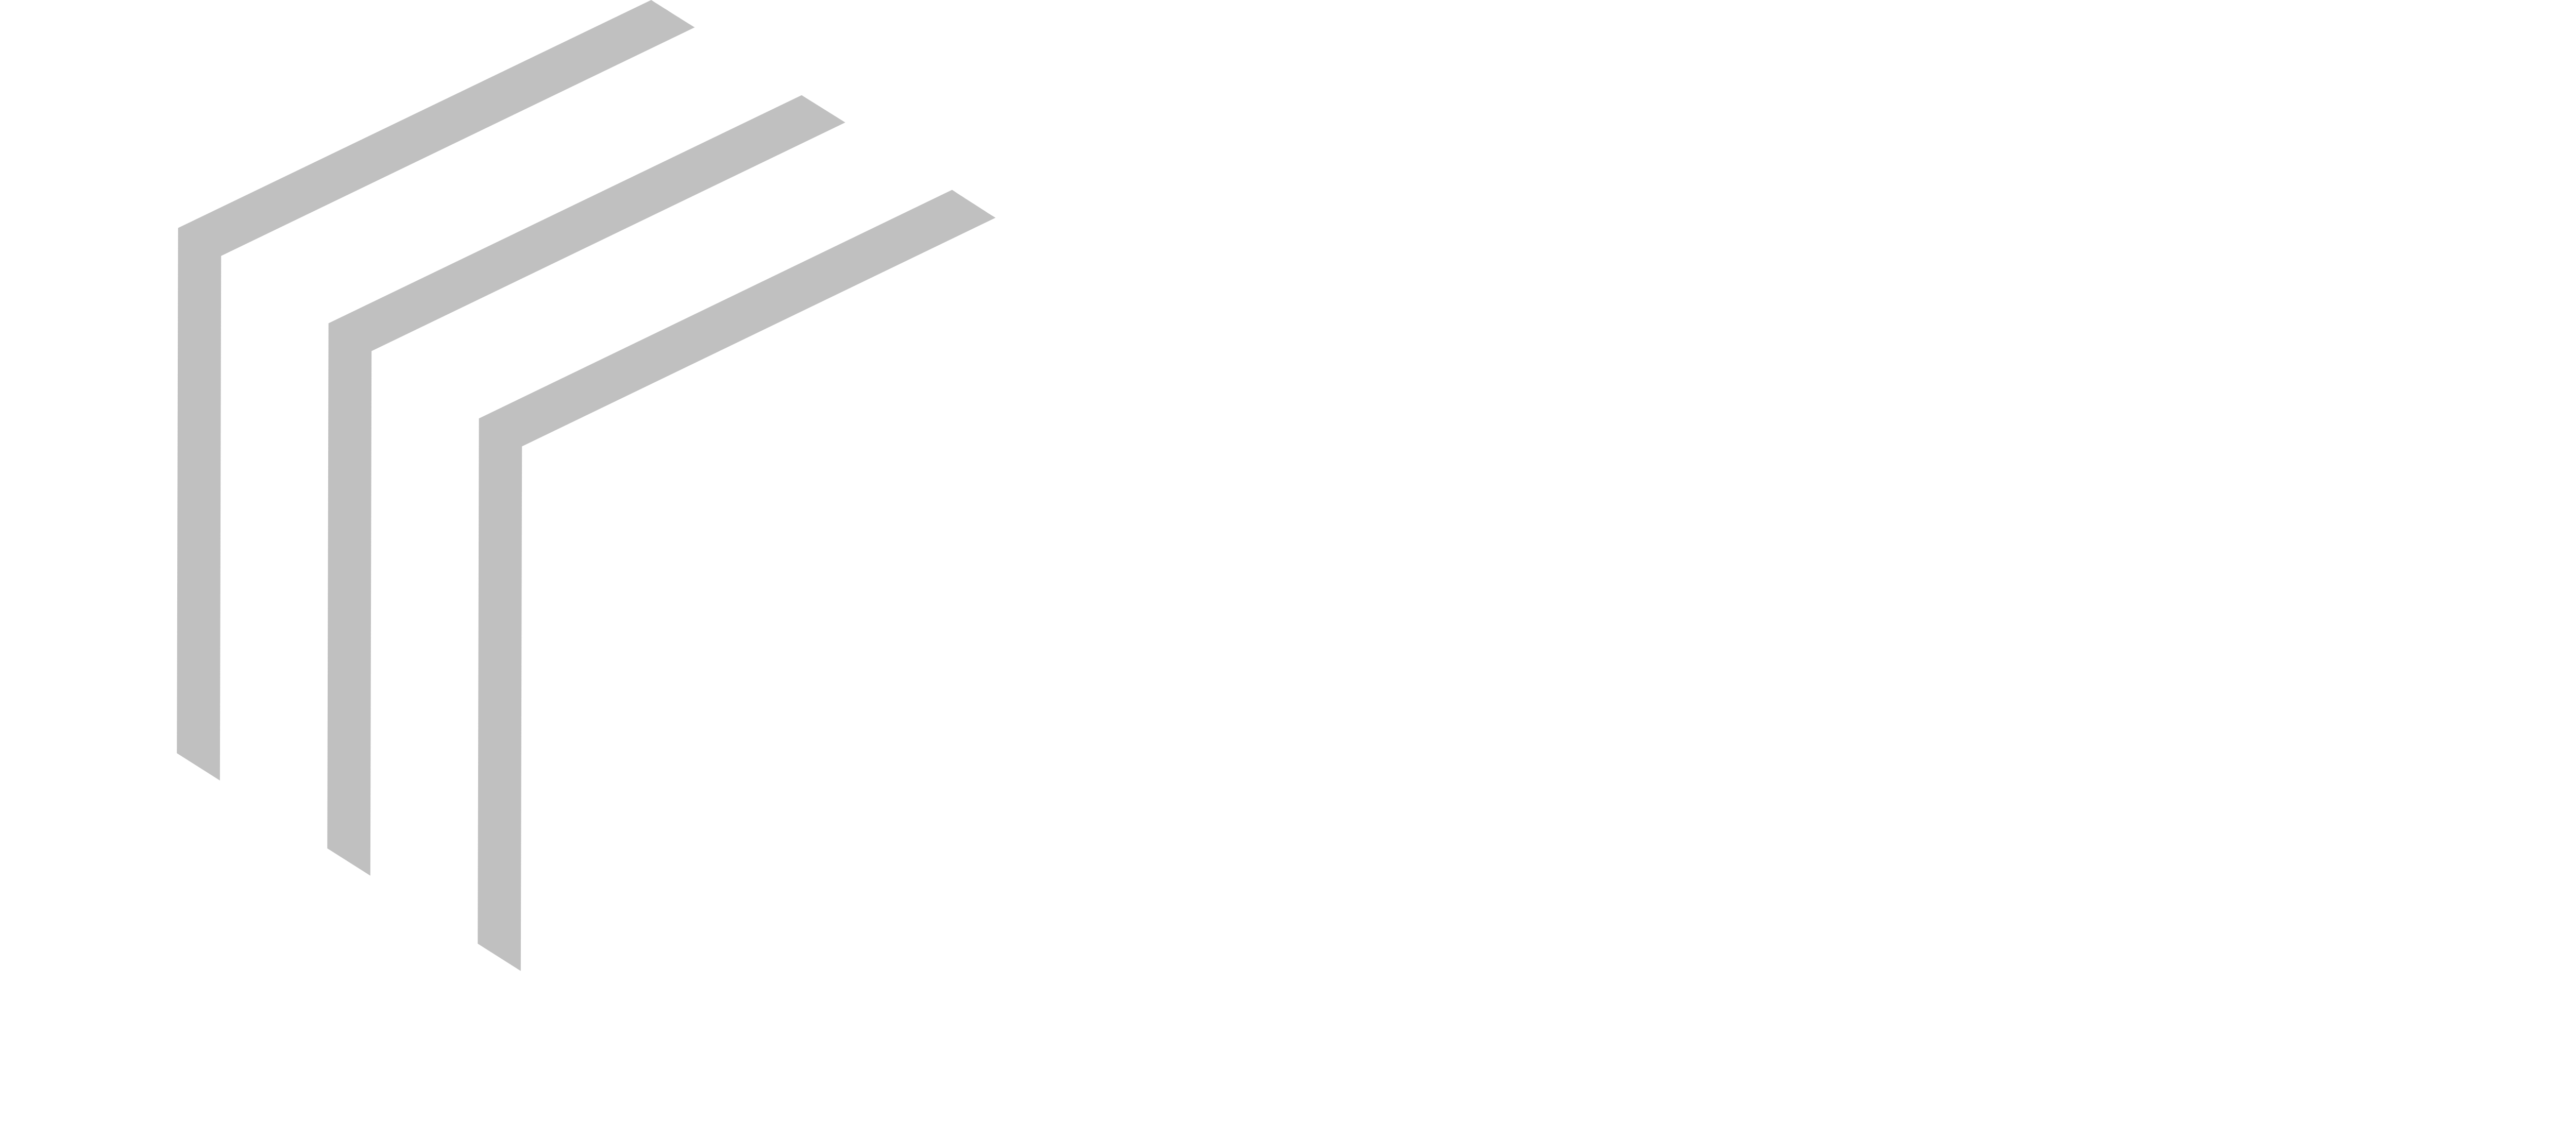 DCI Ltd